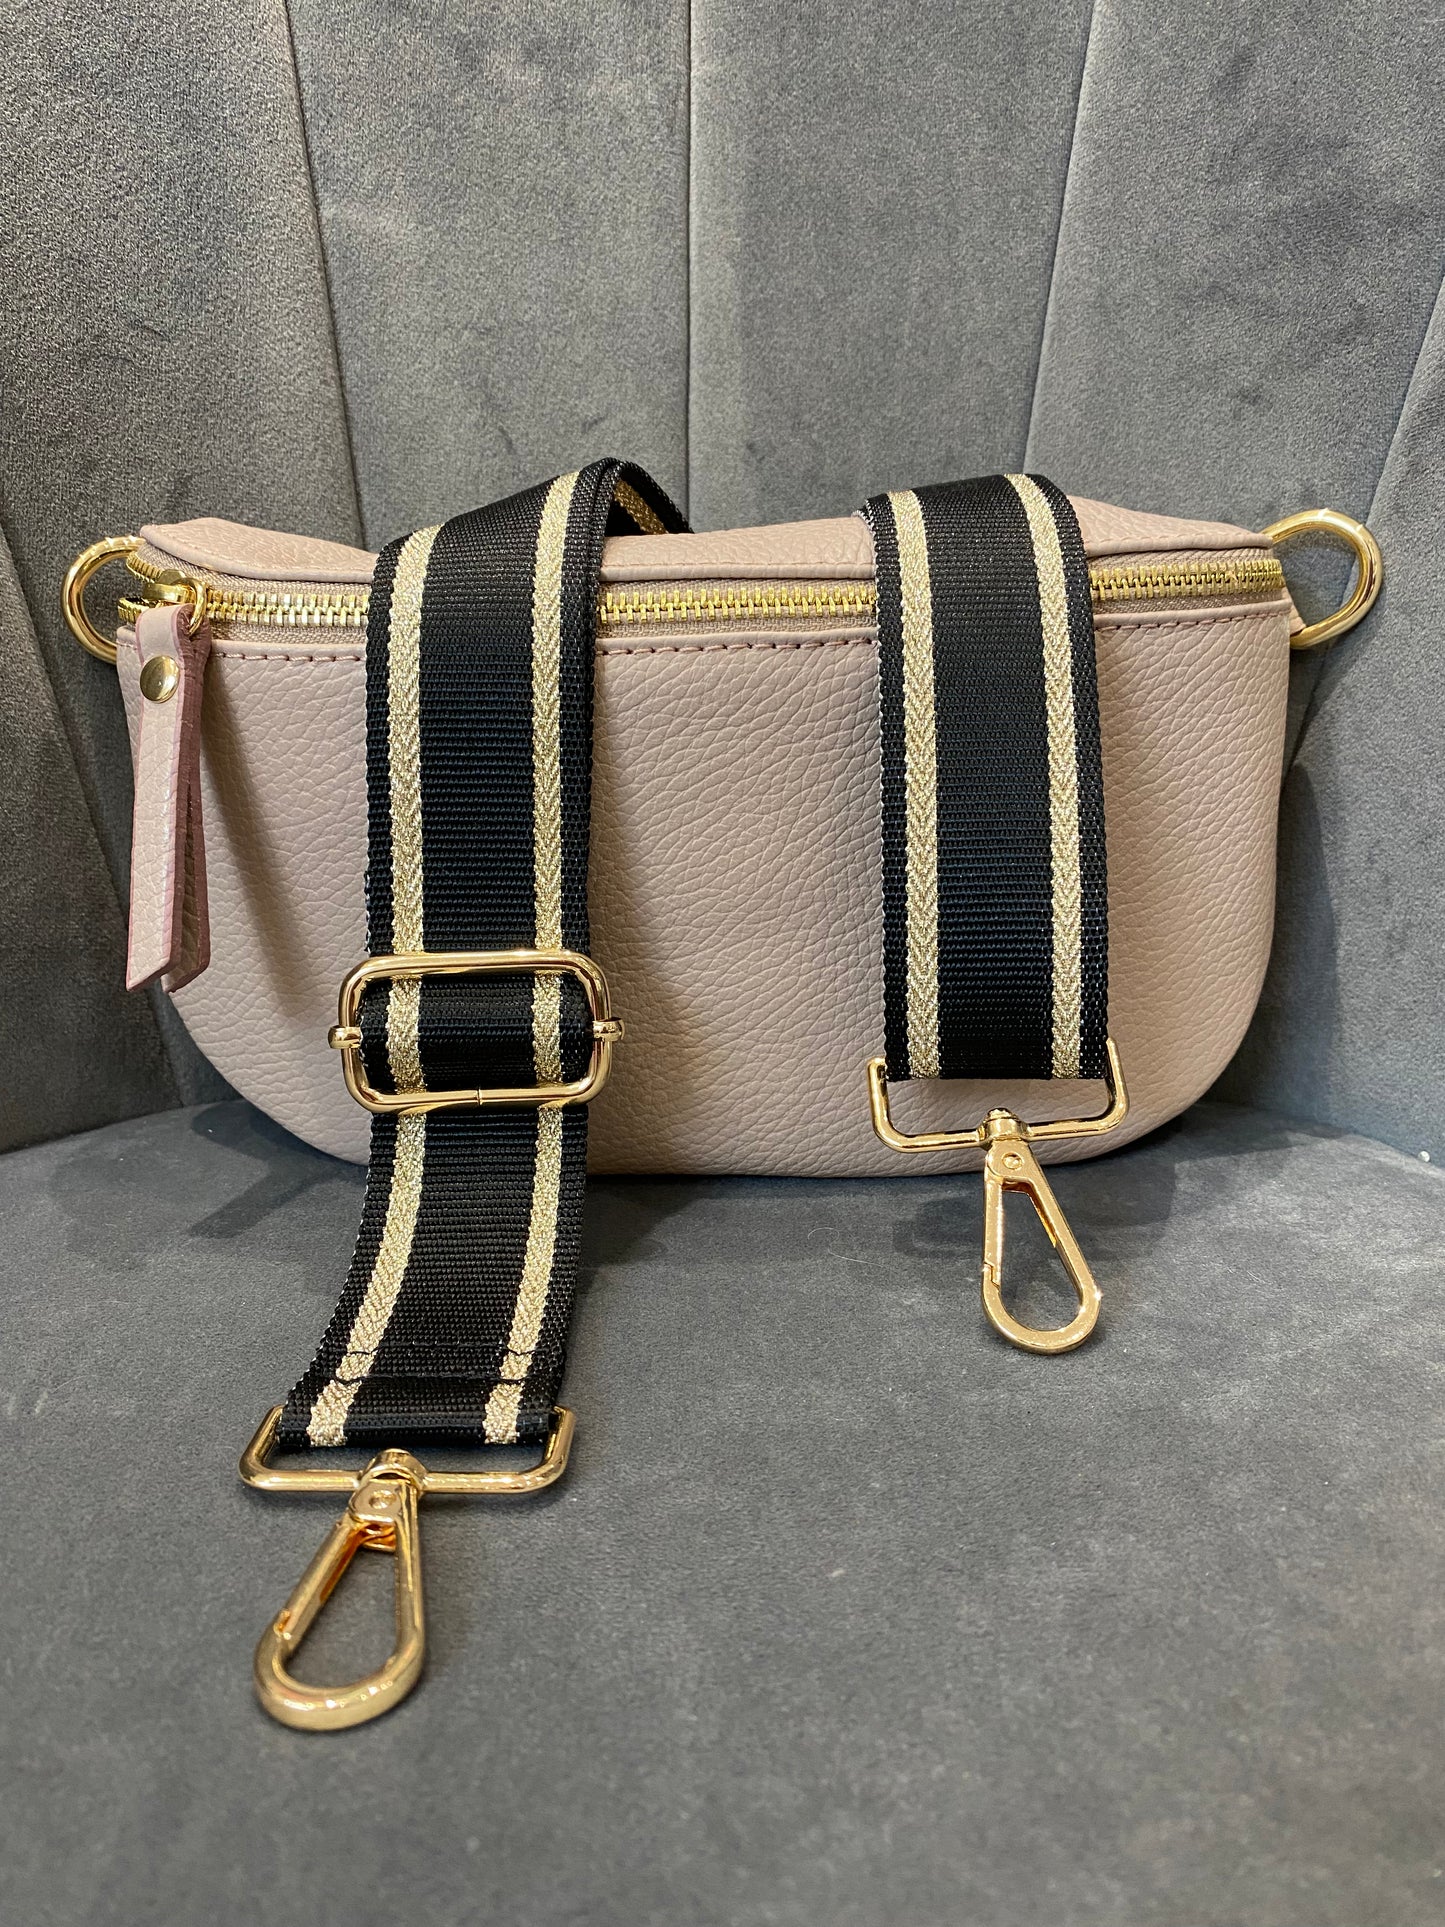 Stripe Bag Strap | Black & Gold